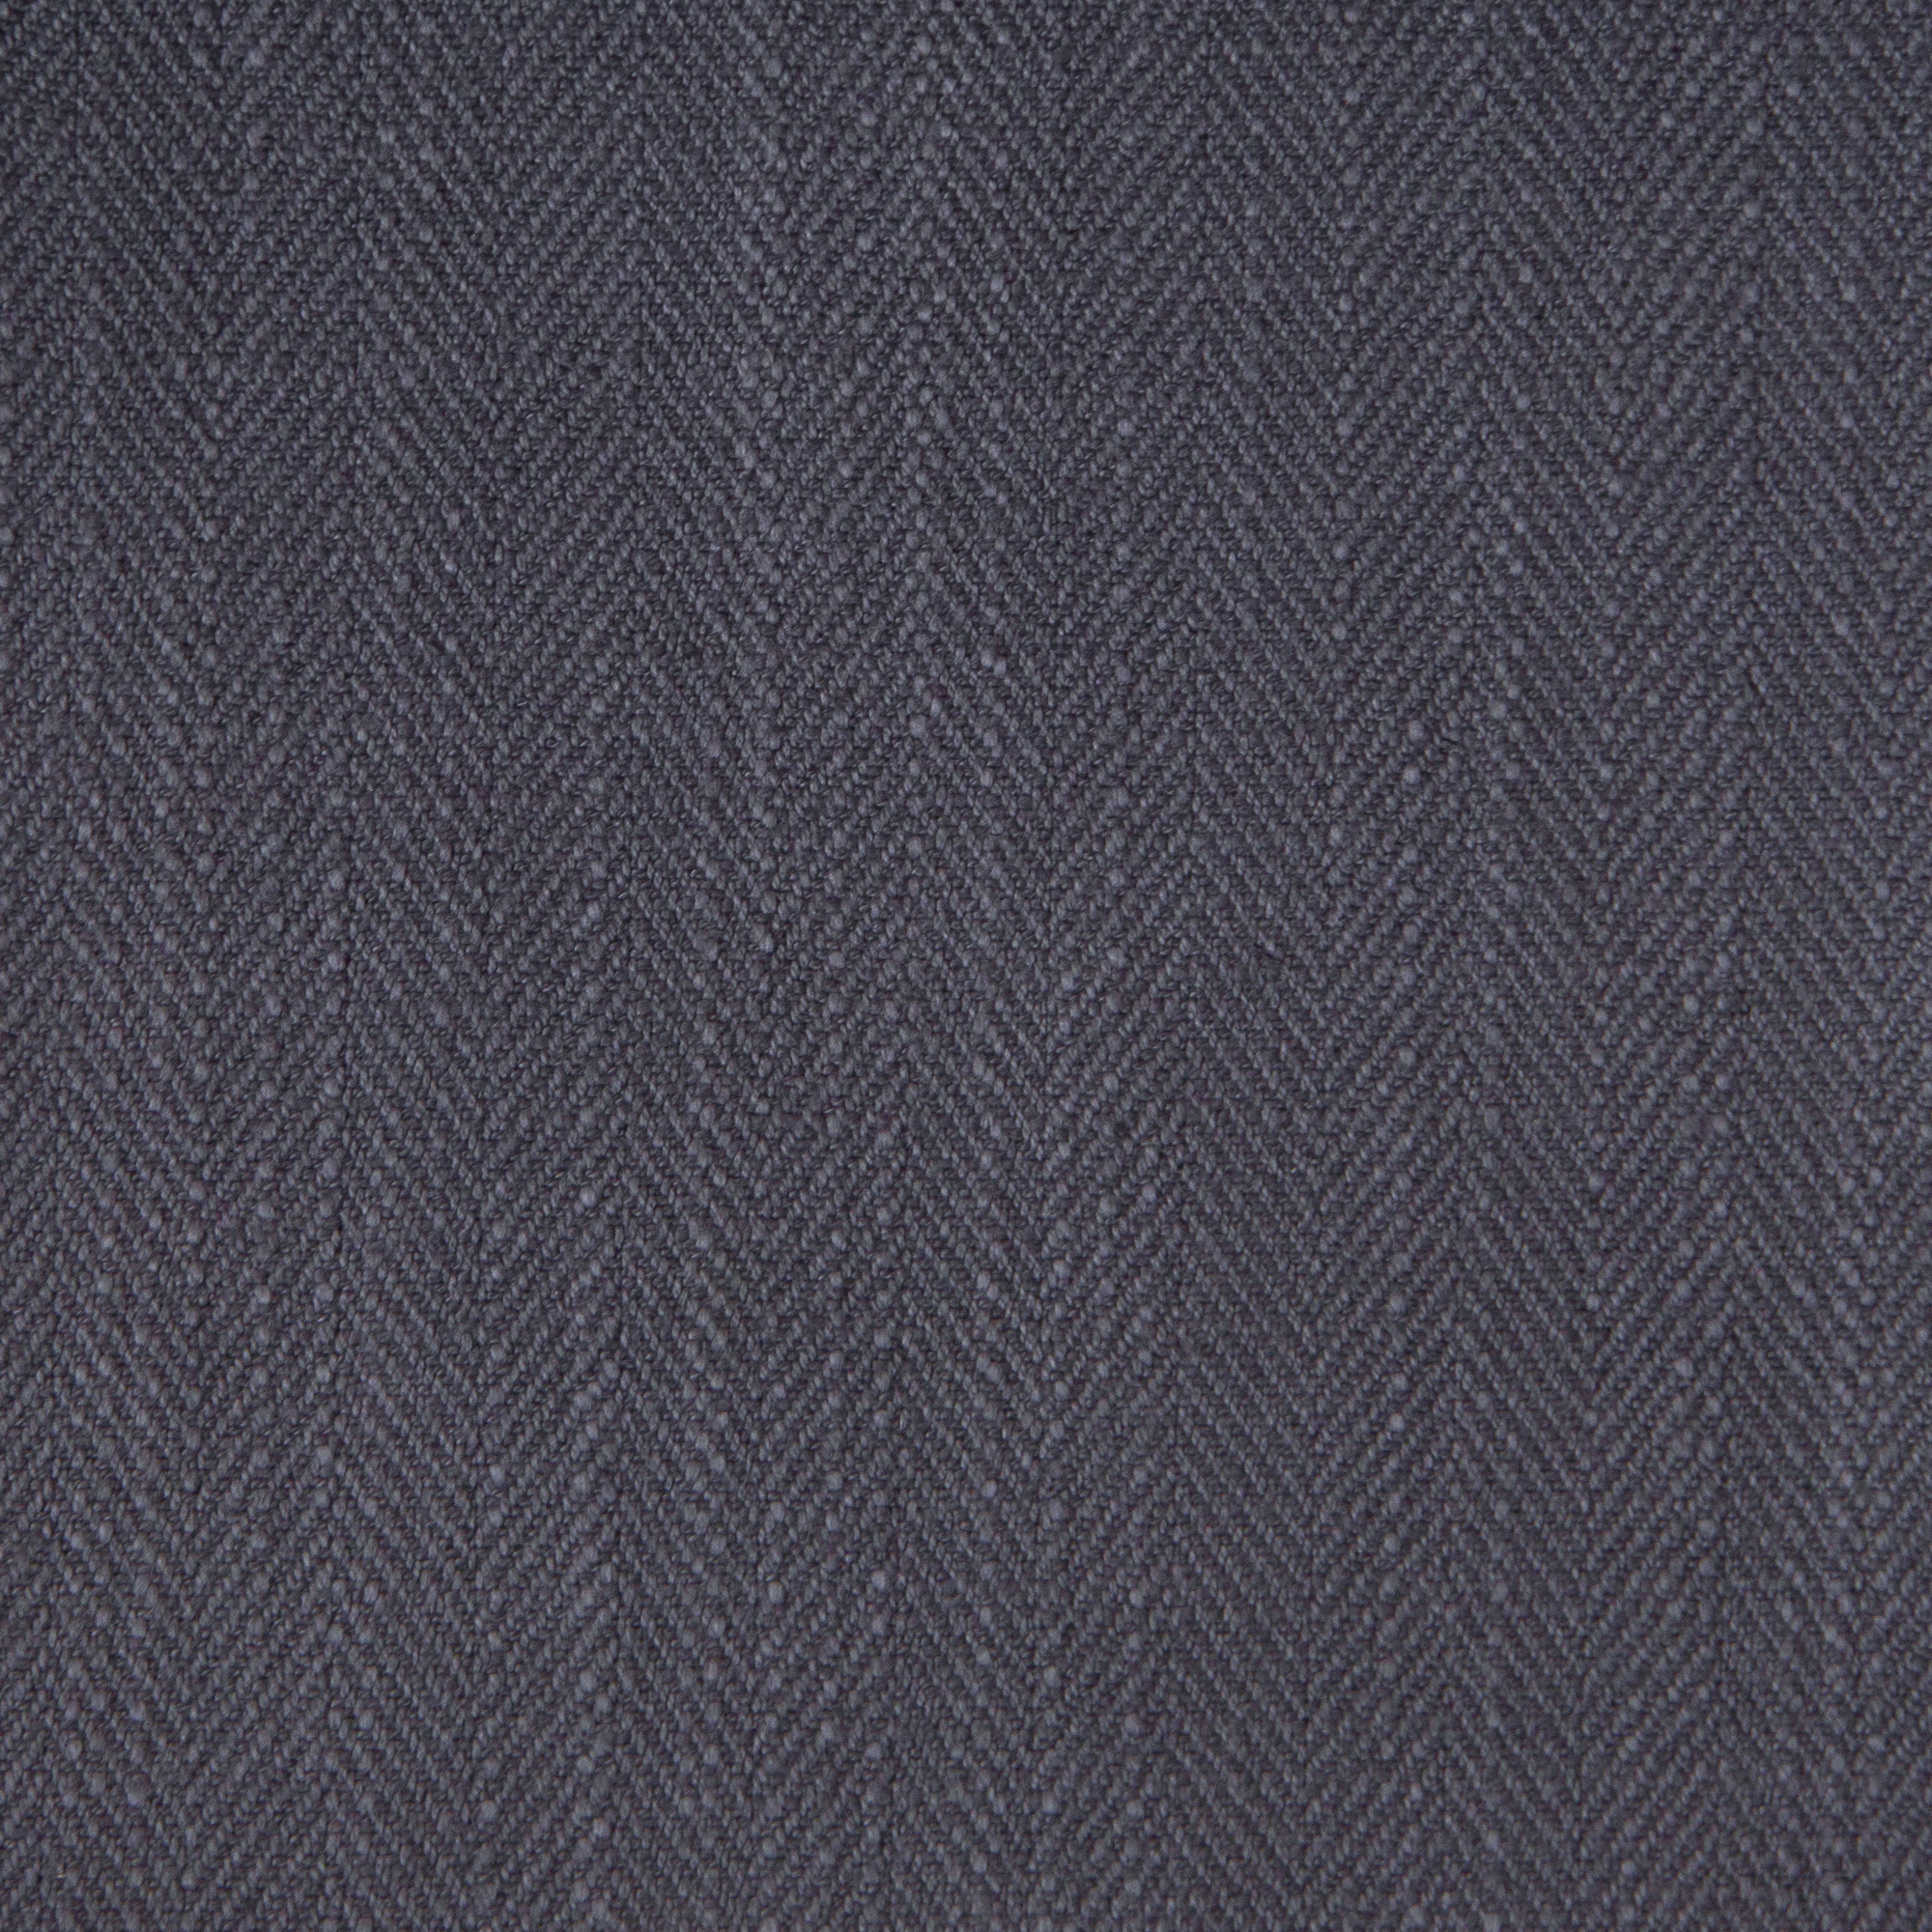 Gir Steel Cotton Linen Blend Fabric